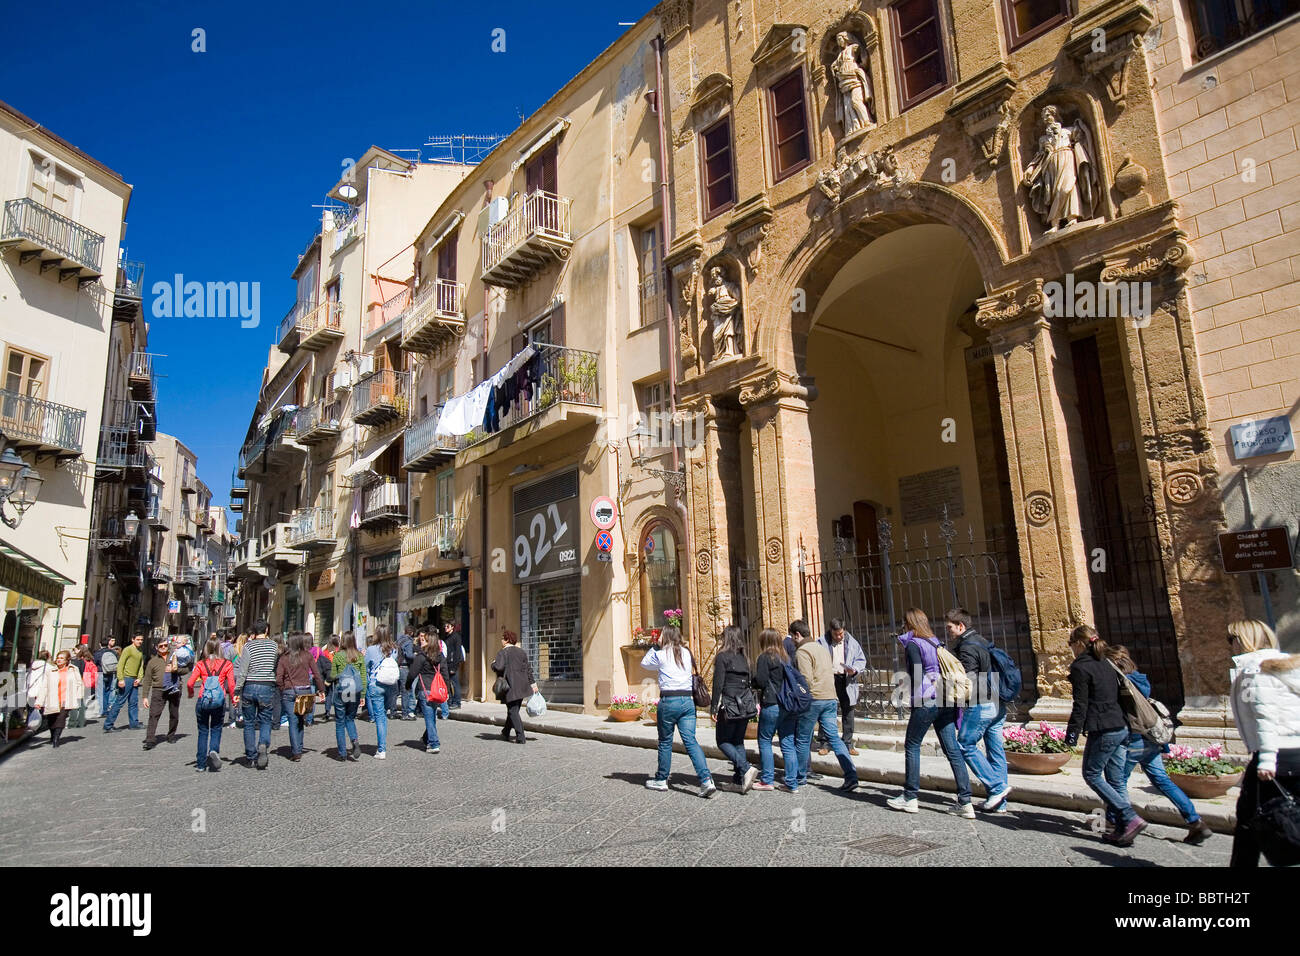 Ruggero street, Cefalu, Sicily, Italy Stock Photo